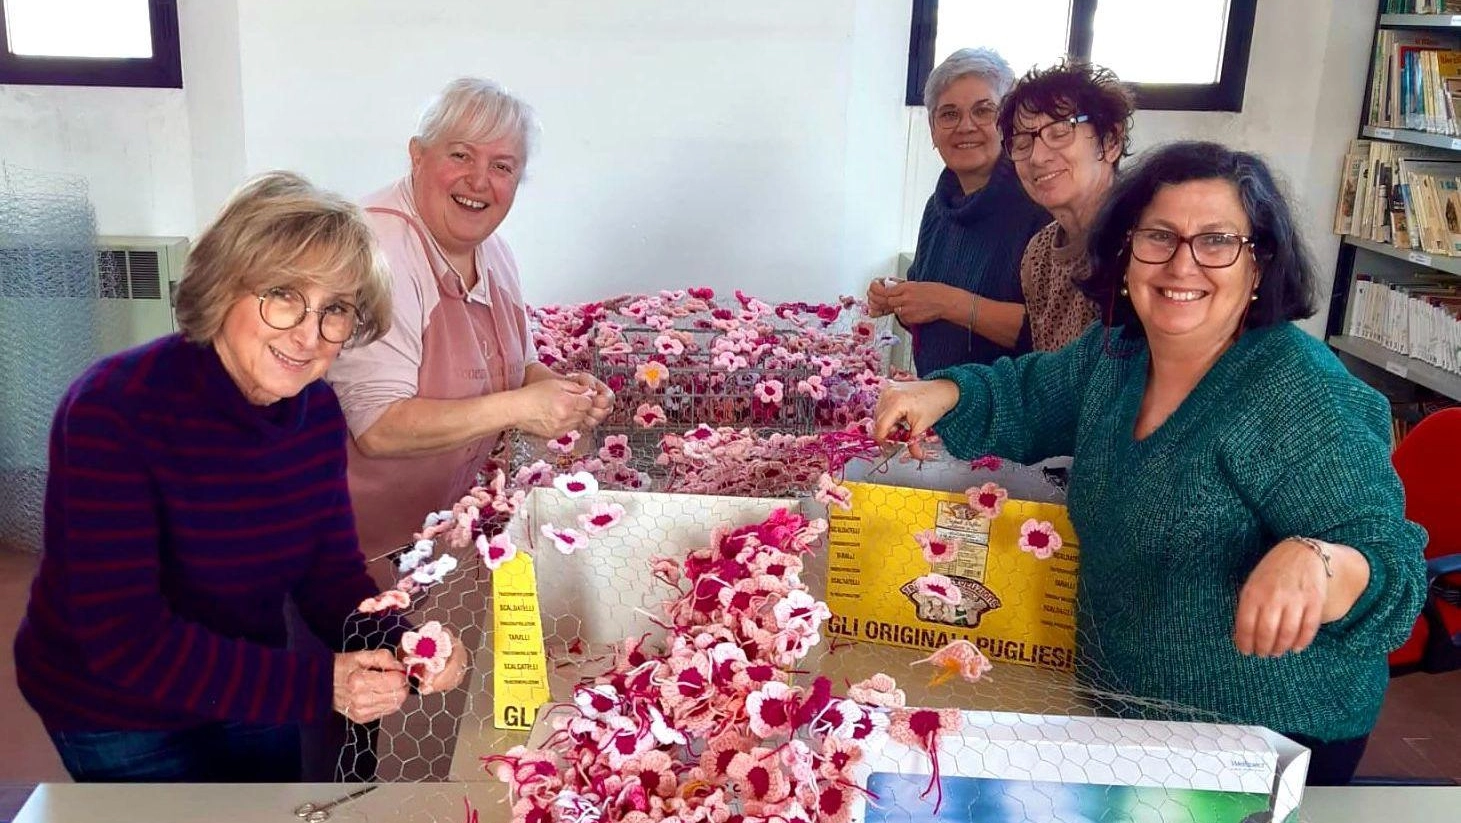 Le volontarie al lavoro per realizzare i fiori all’uncinetto per l’8 marzo